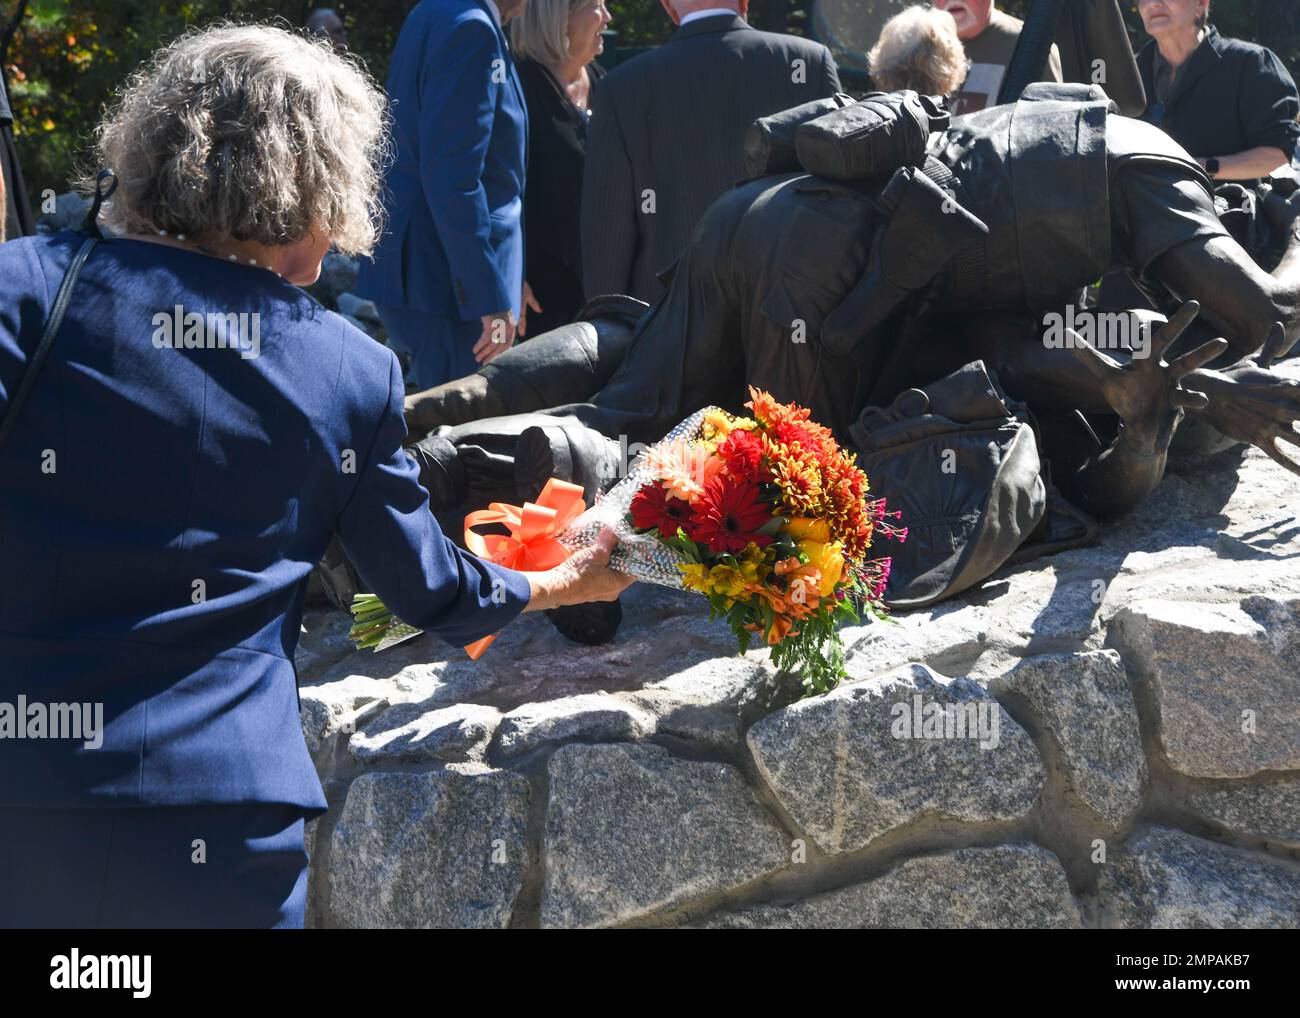 Der Künstler Abbe Godwin legt Blumen an die Basis des Corpsmen Memorial. Godwin ist die Künstlerin hinter der Statue, die sie „CorpsmanUp“ betitelte. Die Gedenkstätte wurde am 12. Oktober 2022 der Öffentlichkeit offiziell enthüllt. Stockfoto